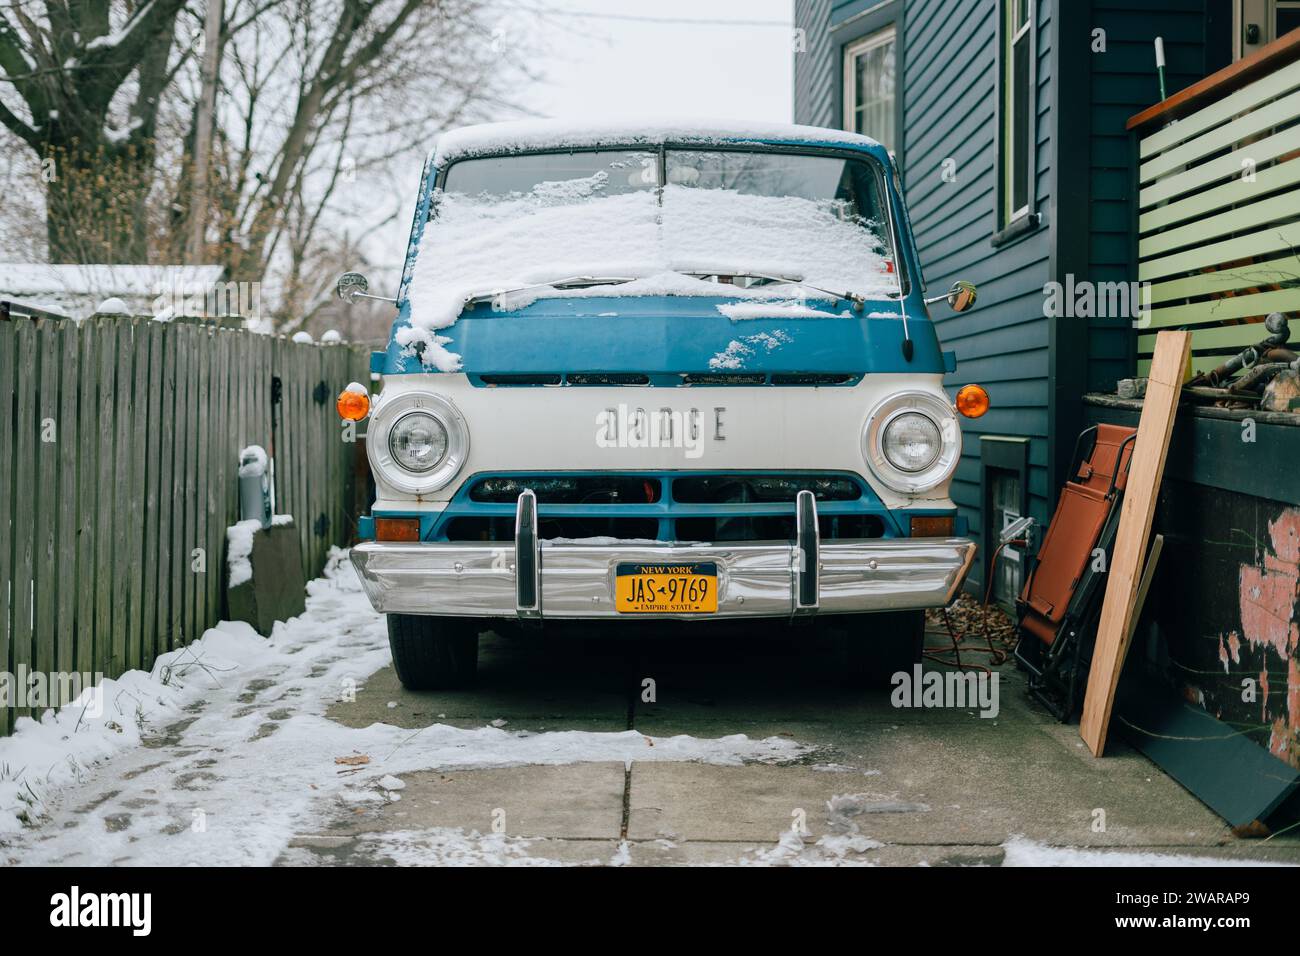 Une fourgonnette Dodge vintage à Allentown, Buffalo, New York Banque D'Images